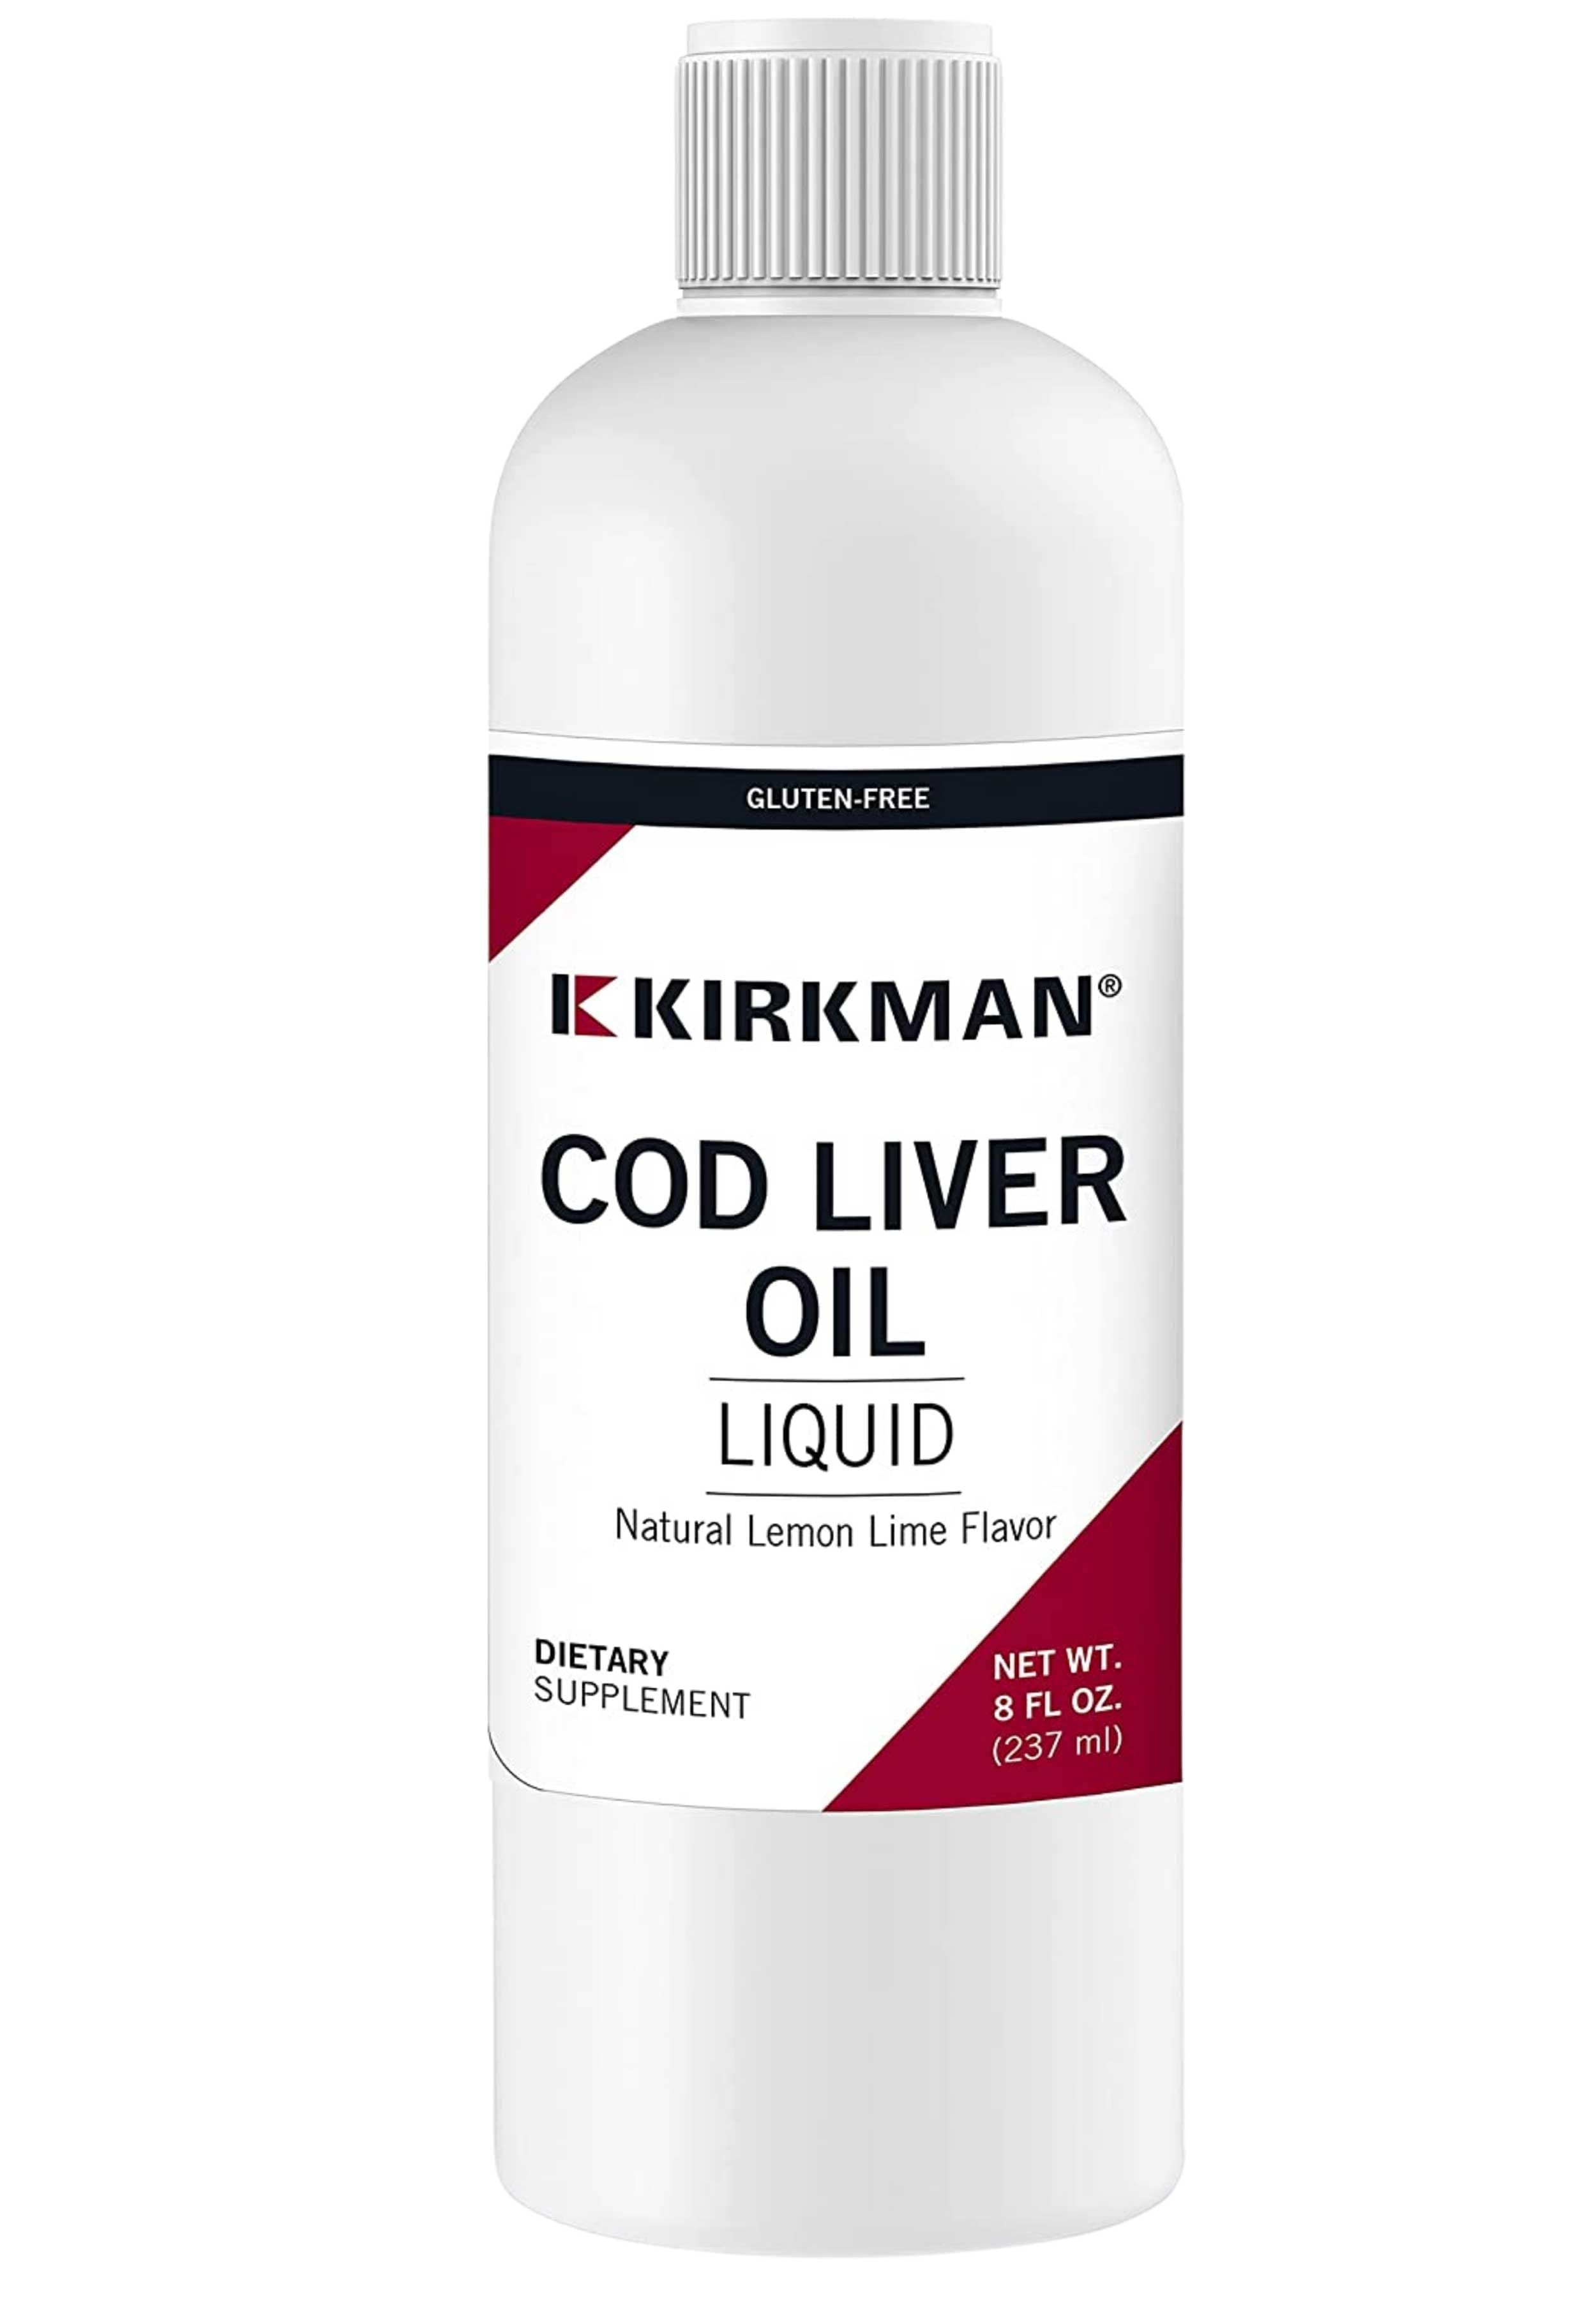 Kirkman Cod Liver Oil Liquid - Lemon Lime Flavor